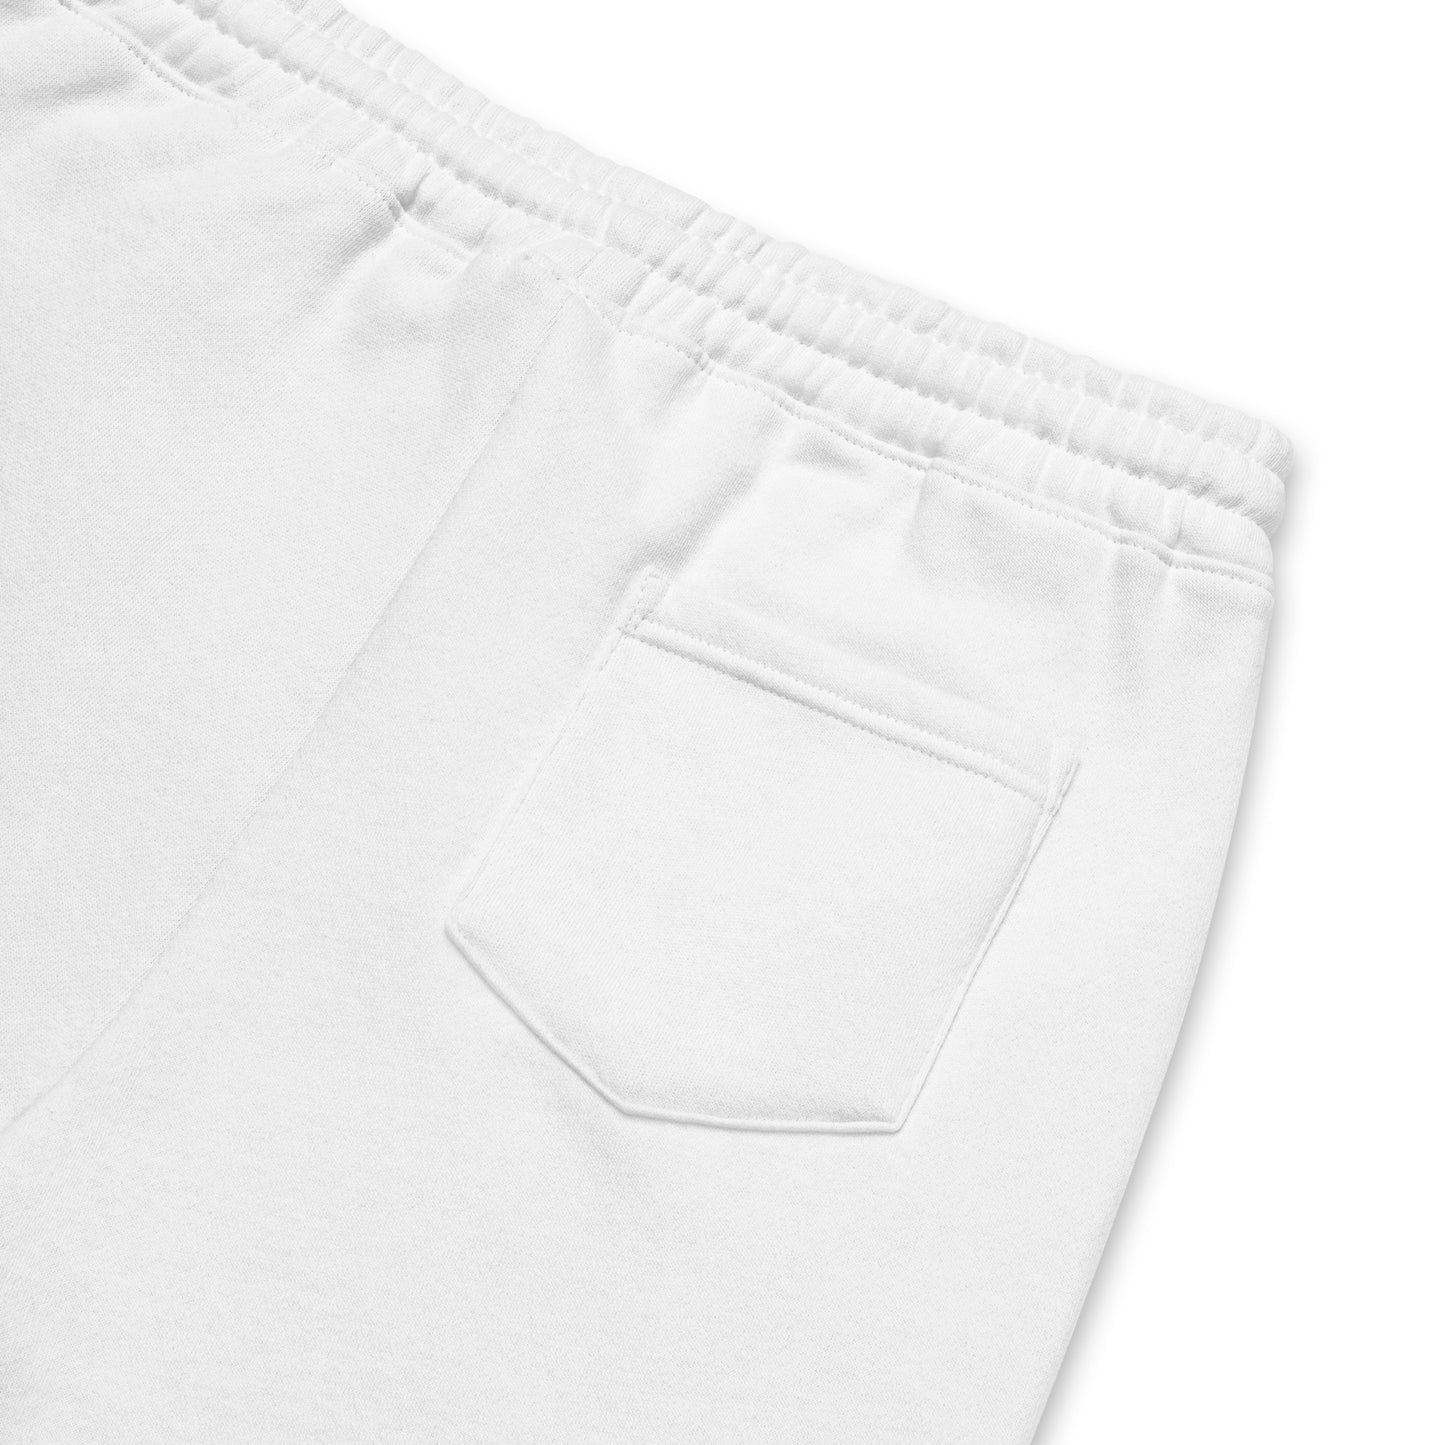 [Between] Between the Lines fleece shorts